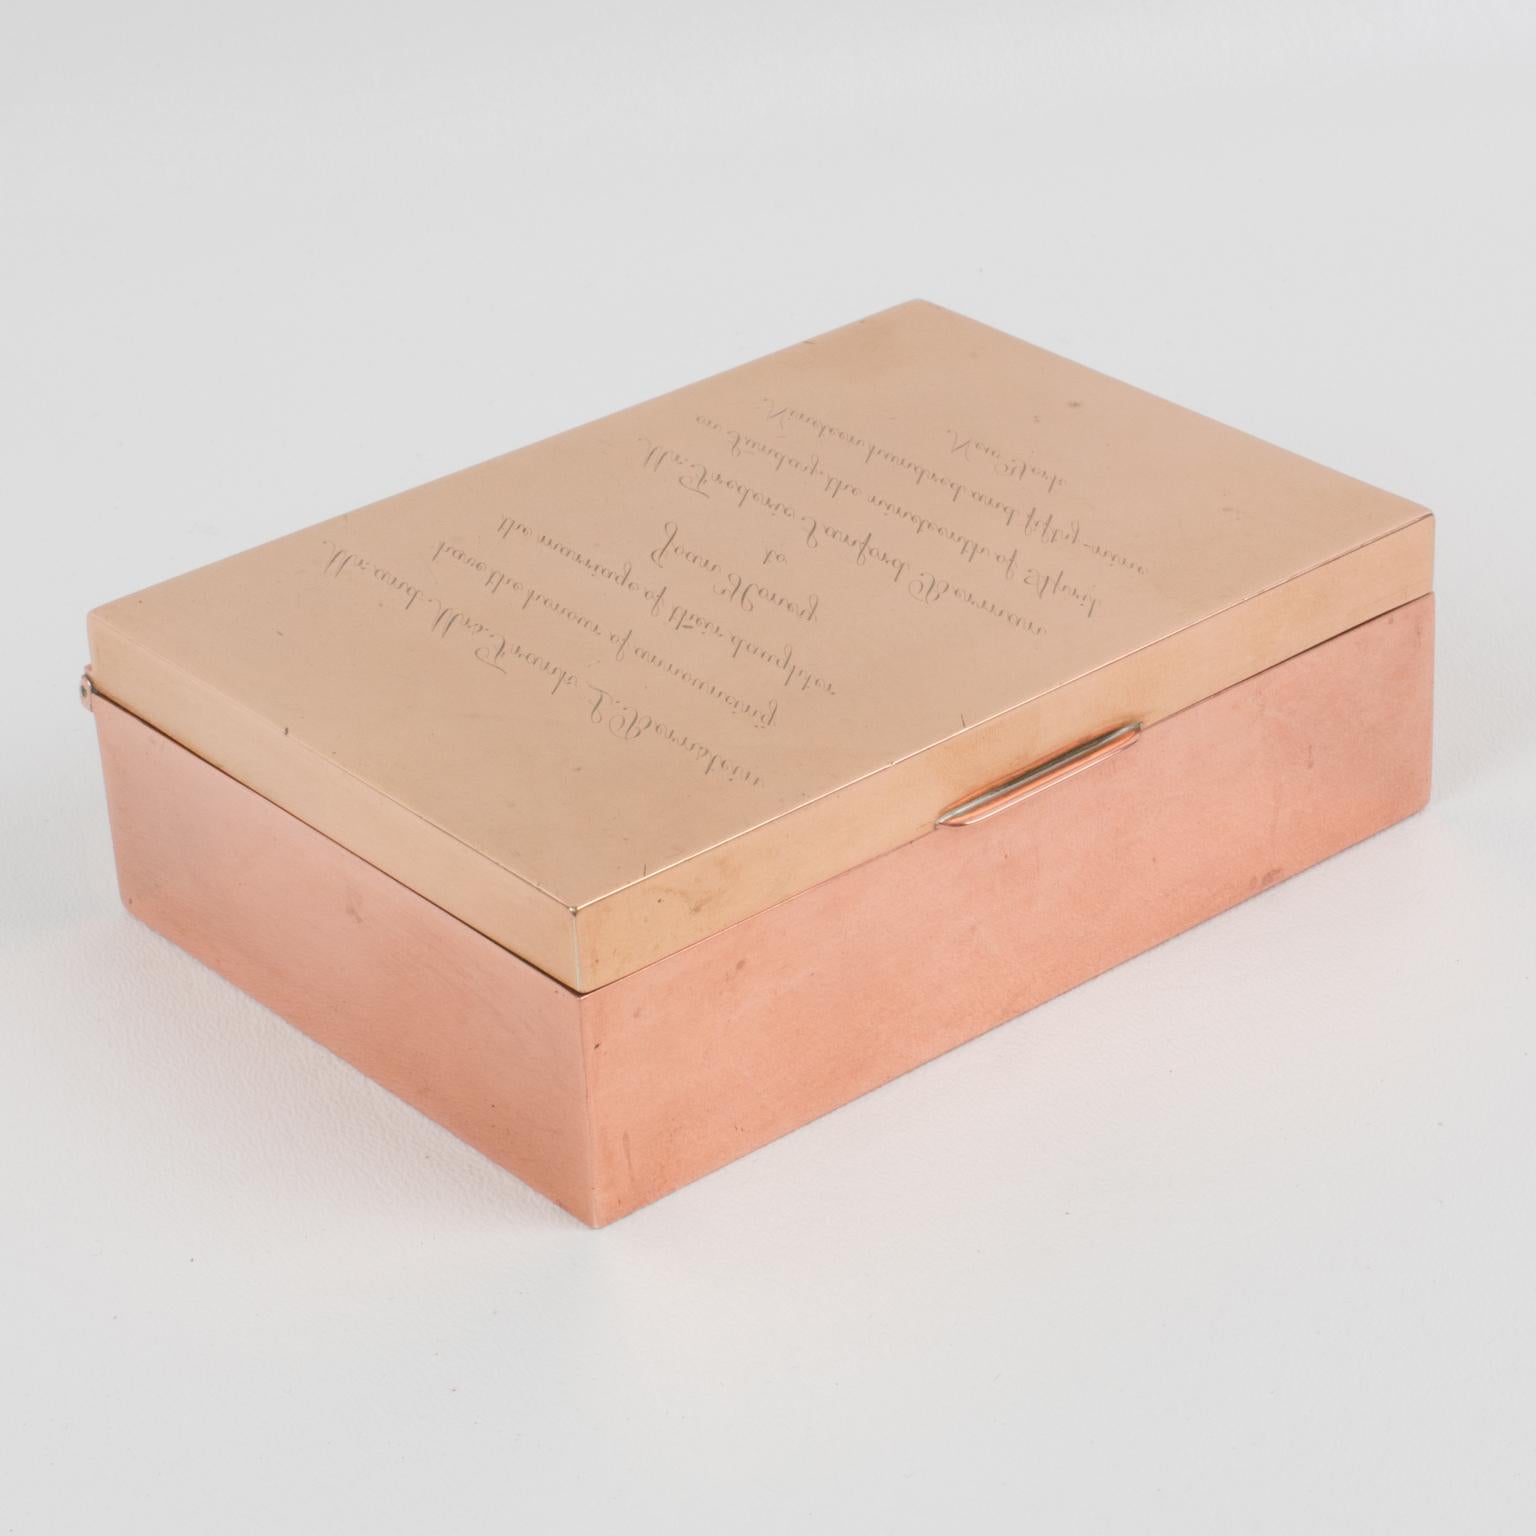 American Cartier Brass and Copper Enigma Box, 1959